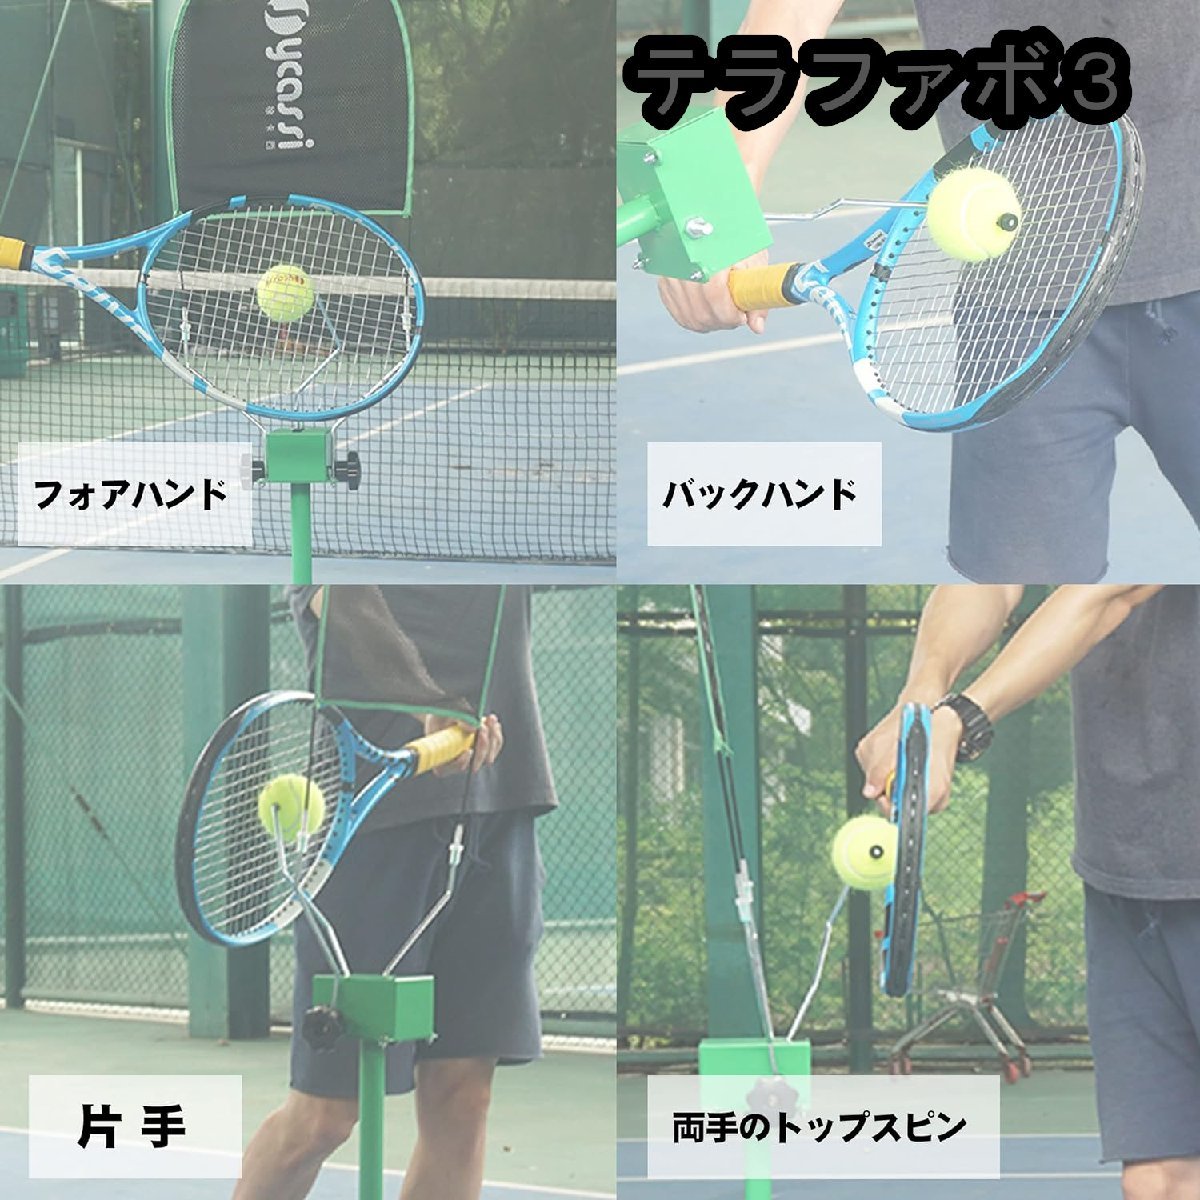  теннис тренировка машина теннис тренировка механизм теннис тренировка инструмент собственный . тренировка теннис тренировка теннис тренировка 